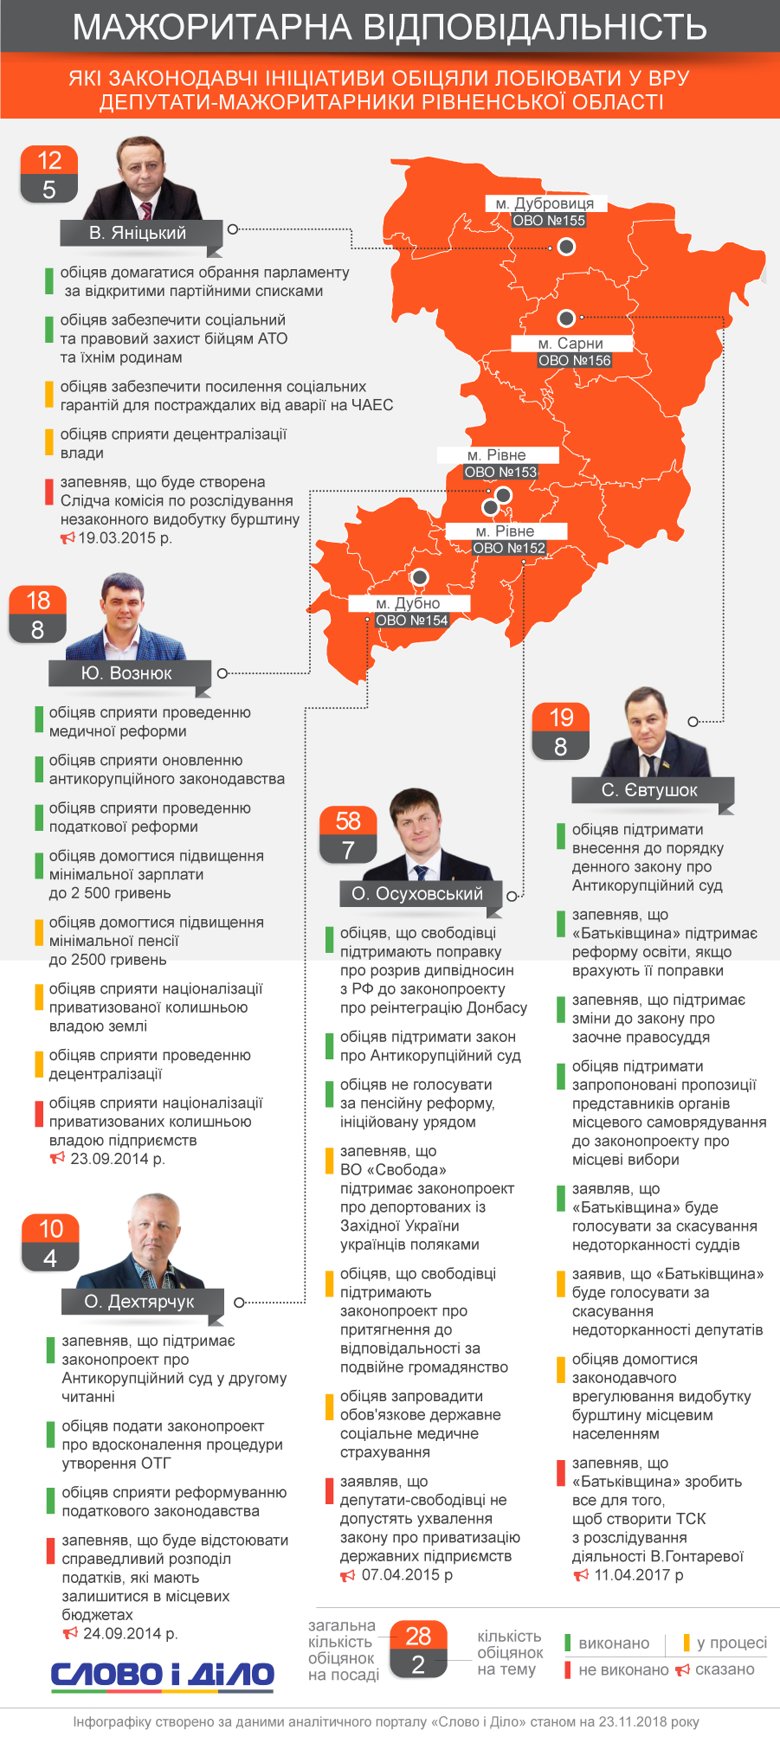 Олег Осуховский обещал обязательное медицинское страхование, а Юрий Вознюк – медицинскую реформу.